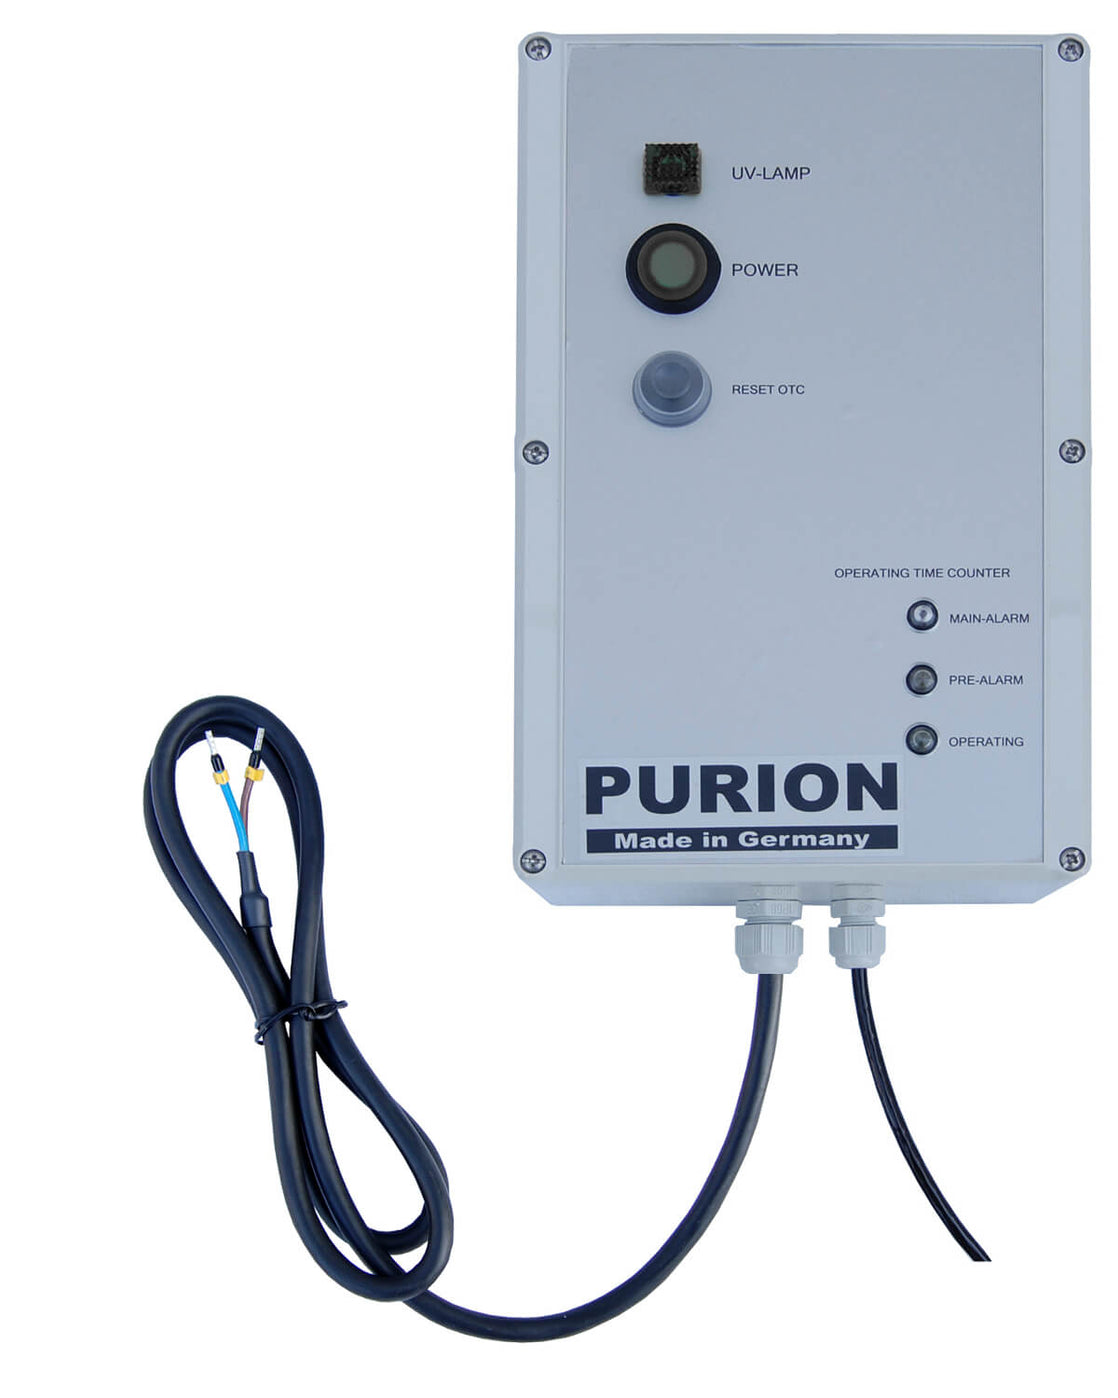 Die PURION GmbH ist eine Desinfektionsanlage namens PURION 500 OTC Bundle, die sich auf die Trinkwasseraufbereitung spezialisiert hat und durch ihre innovative Technologie ein autarkes Leben gewährleistet.